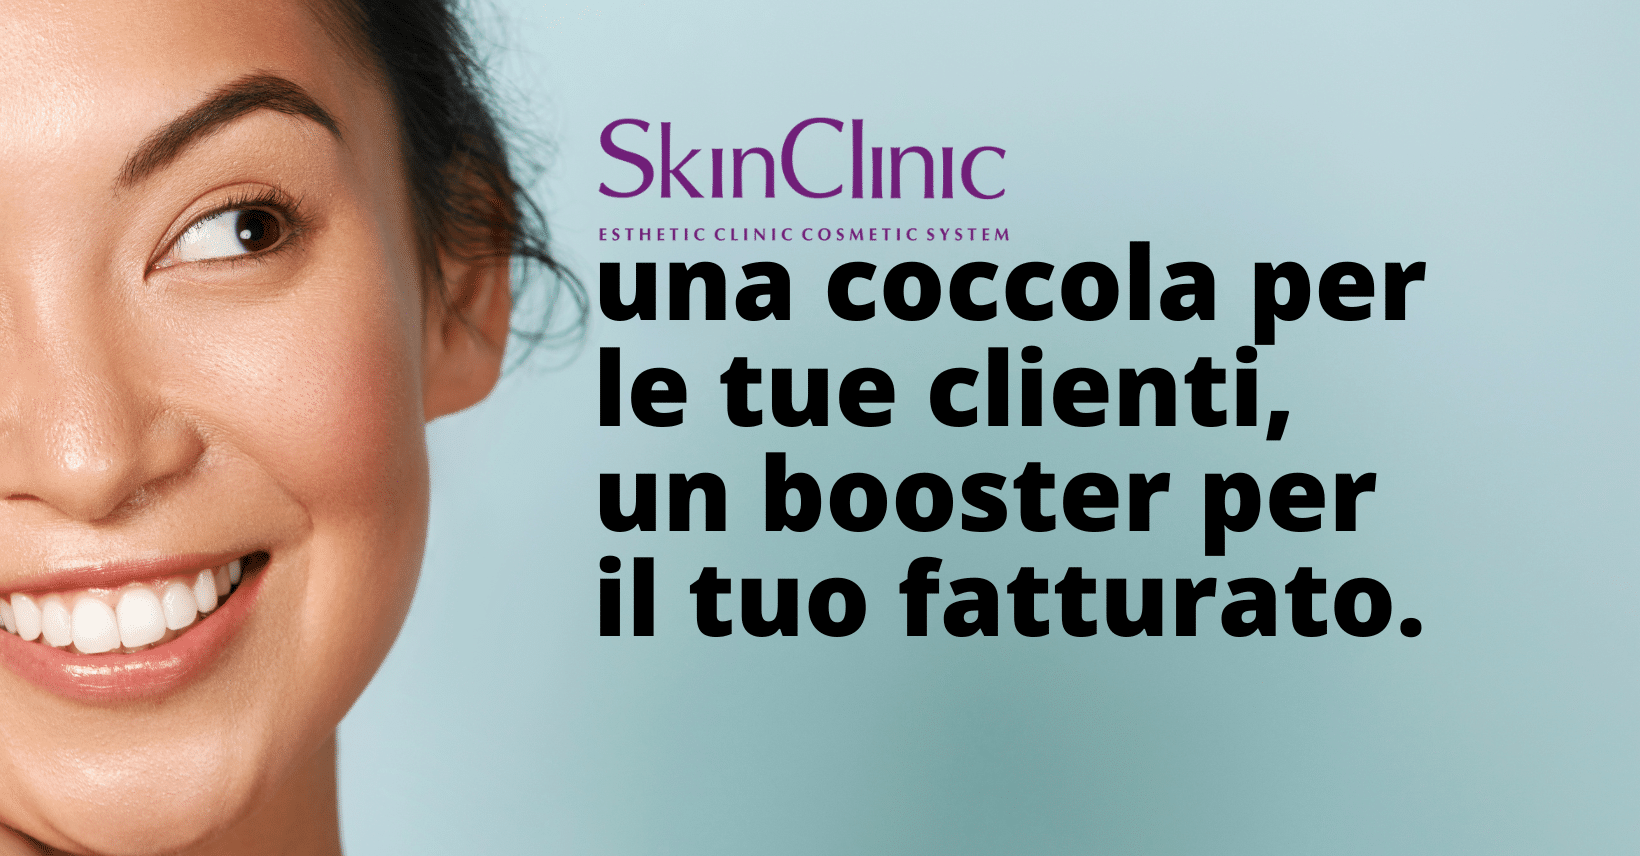 skin clinic: booster fatturato